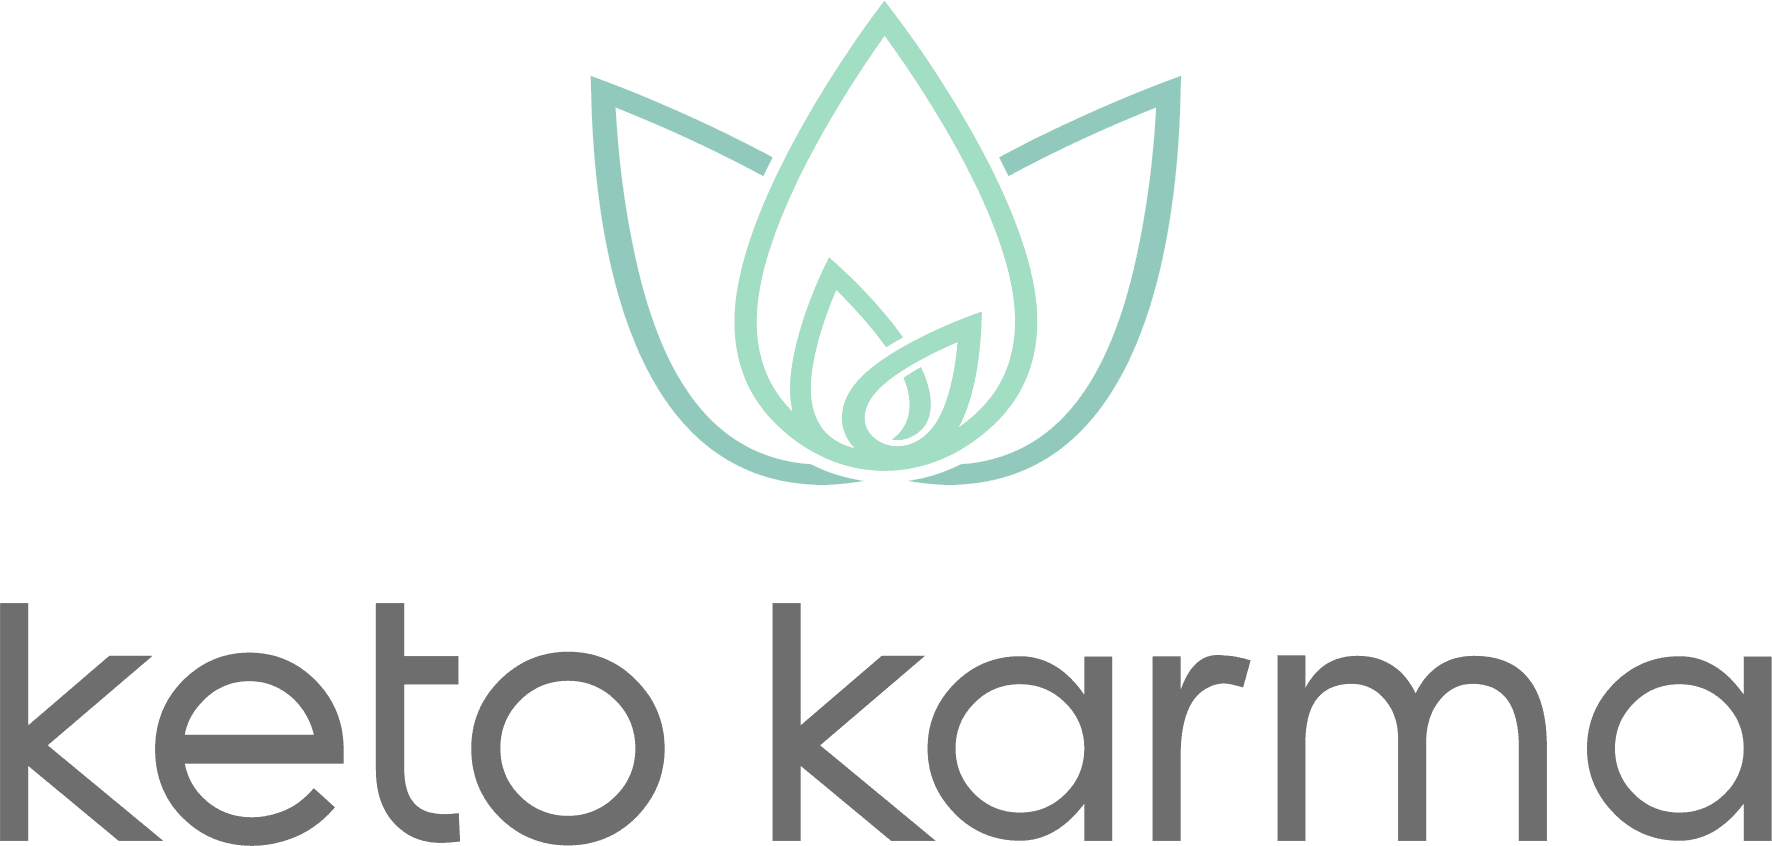 Keto Logo - Health and Beauty Archives